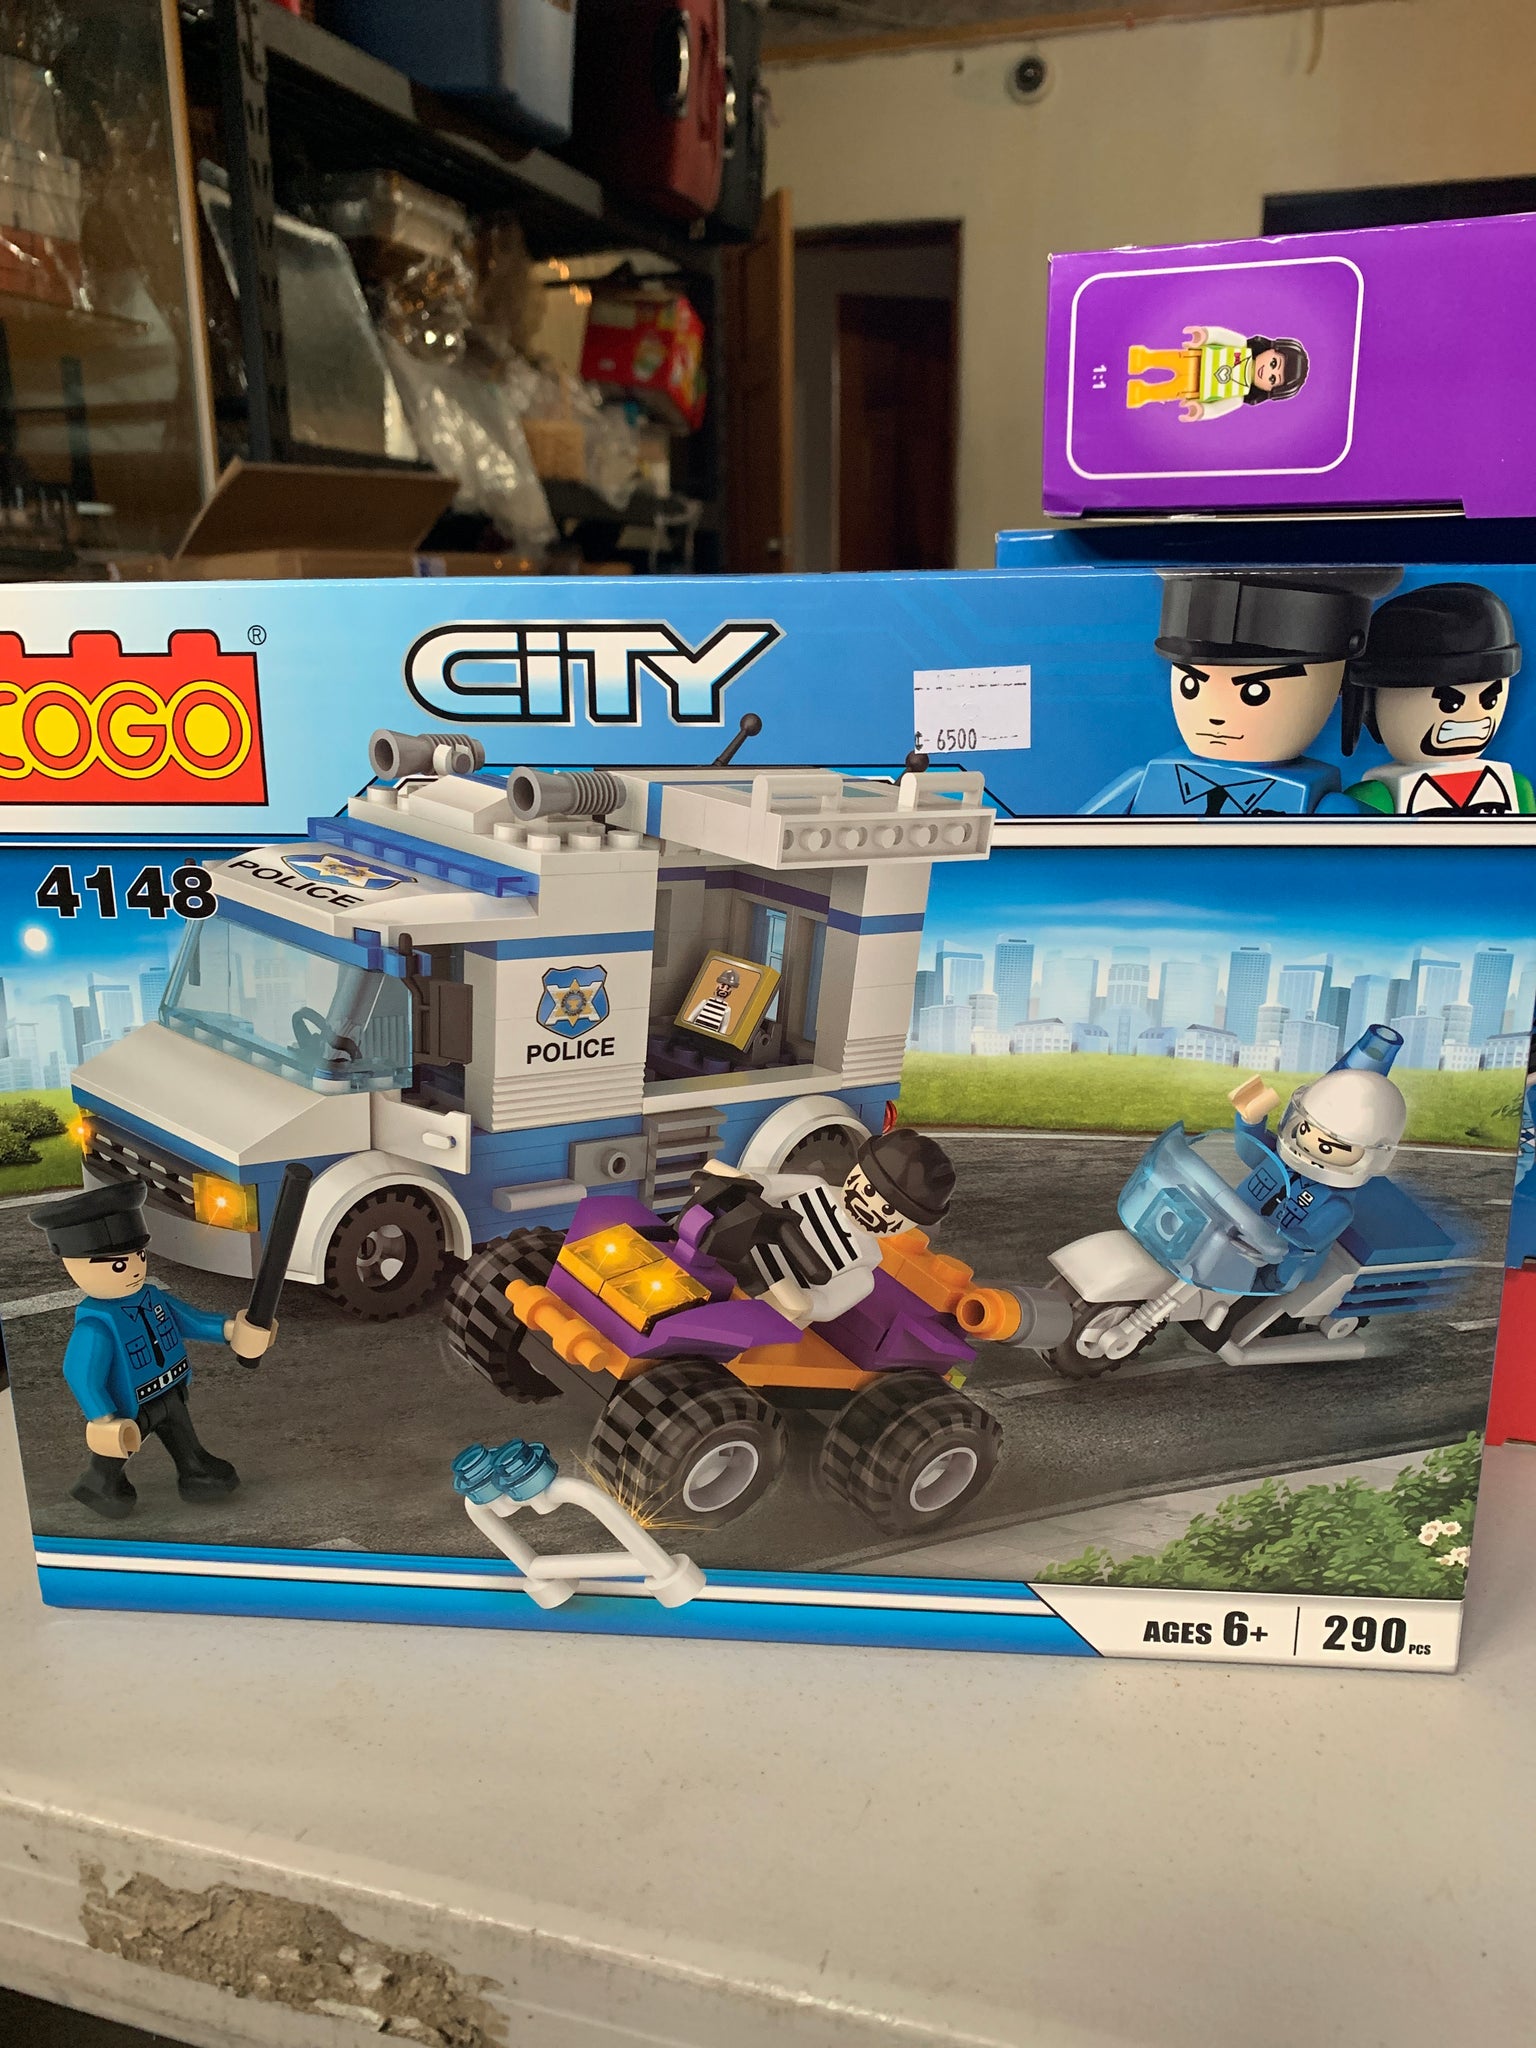 Cogo City 4148 vehículo policial y cuadriculo